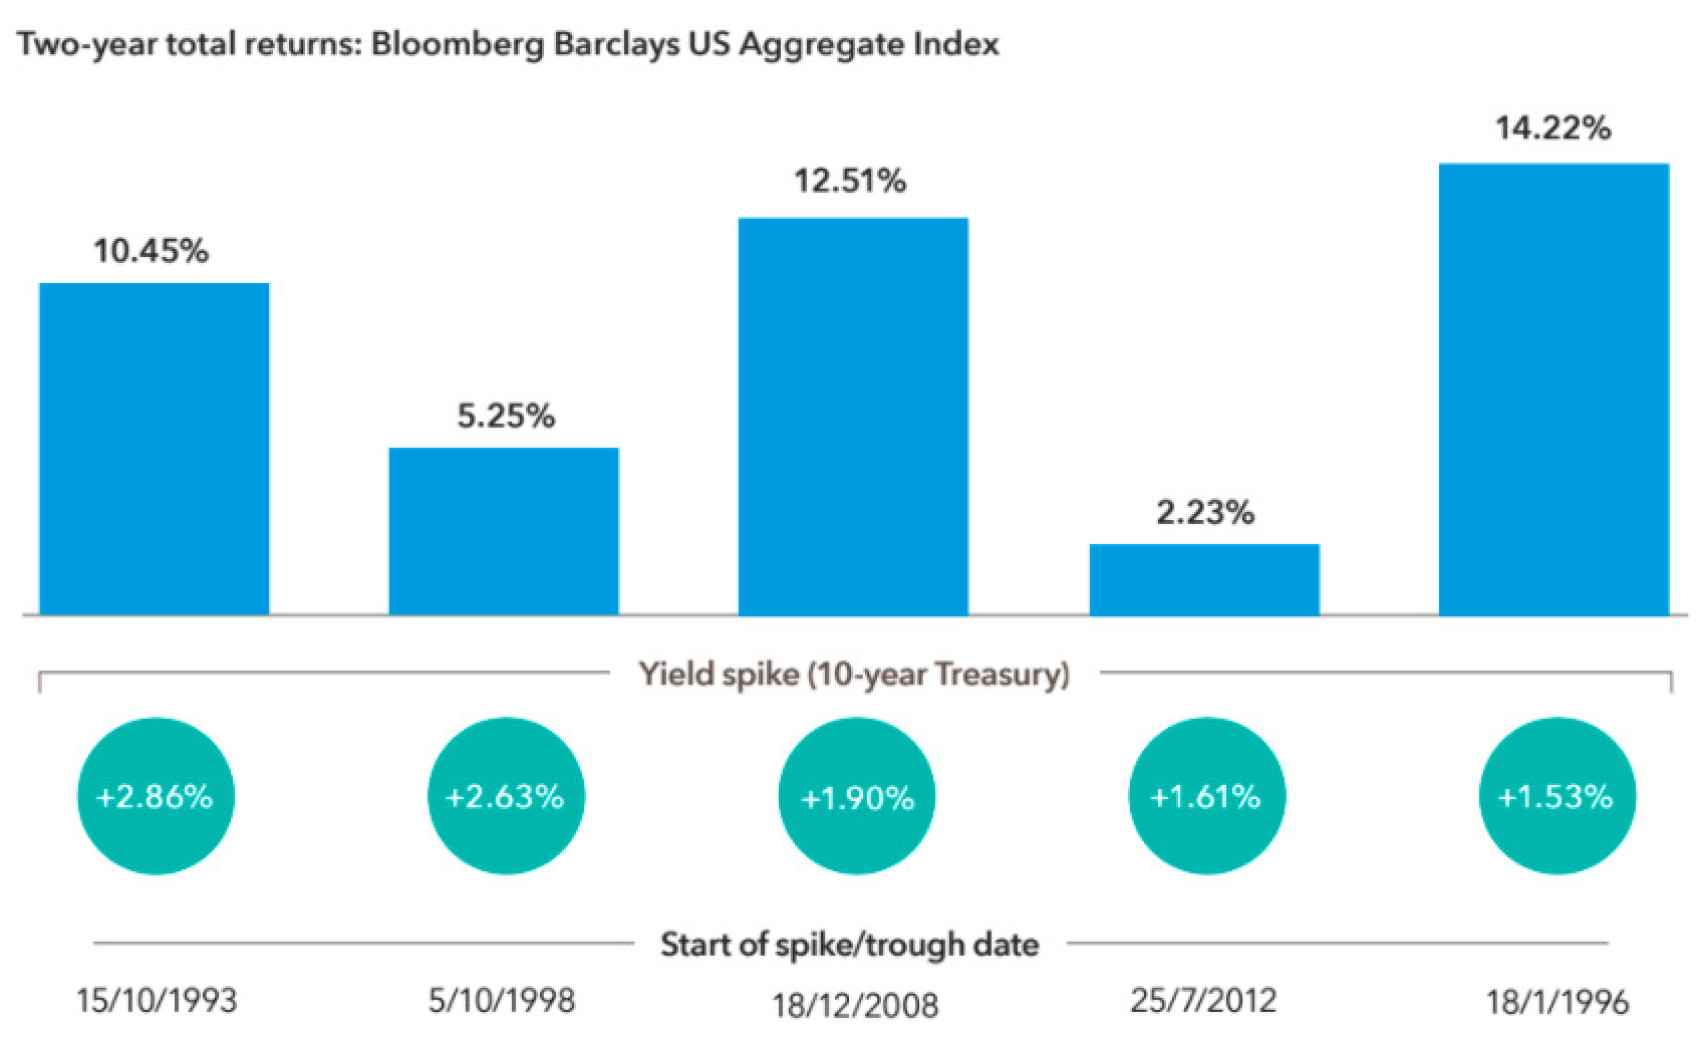 Comportamiento del índice mundial de bonos tras subidas de rendimientos en el Treasury.